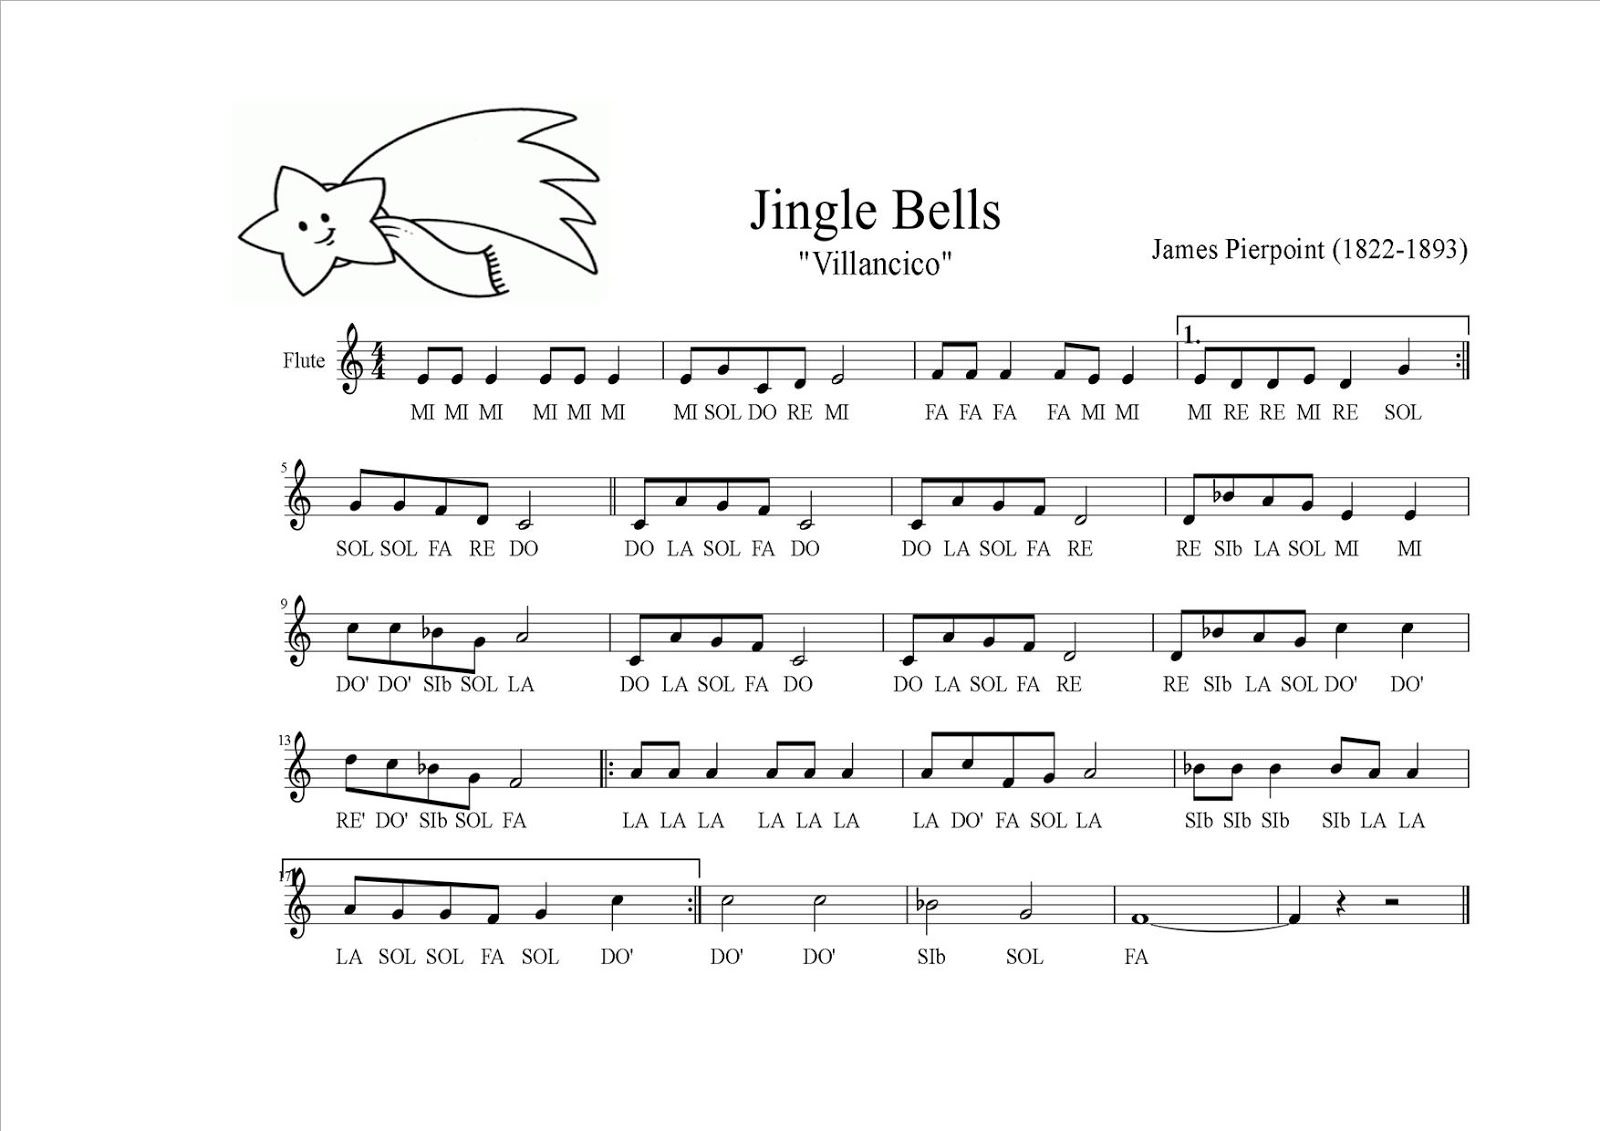 Villancico Jingle Bells con letra - Aprendiendo con Julia